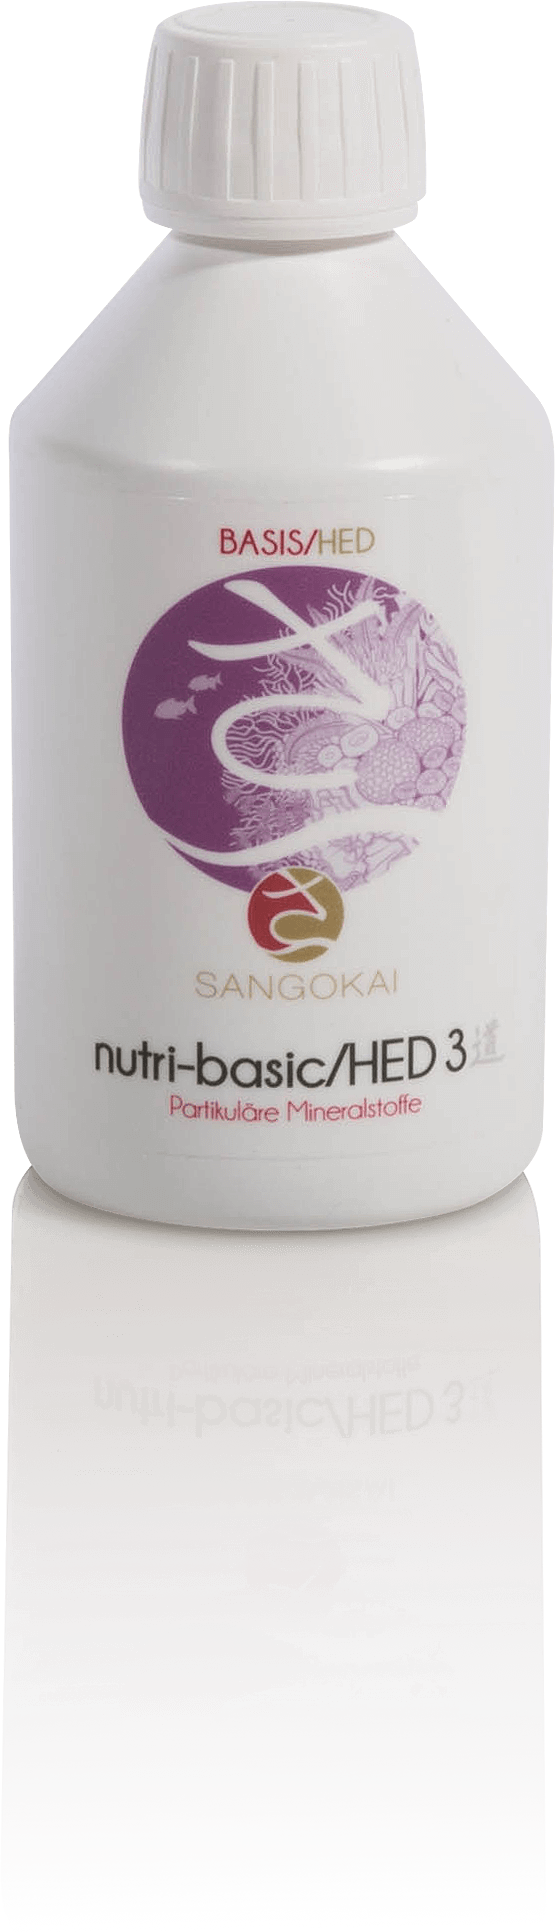 Sango nutri-basic/ HED